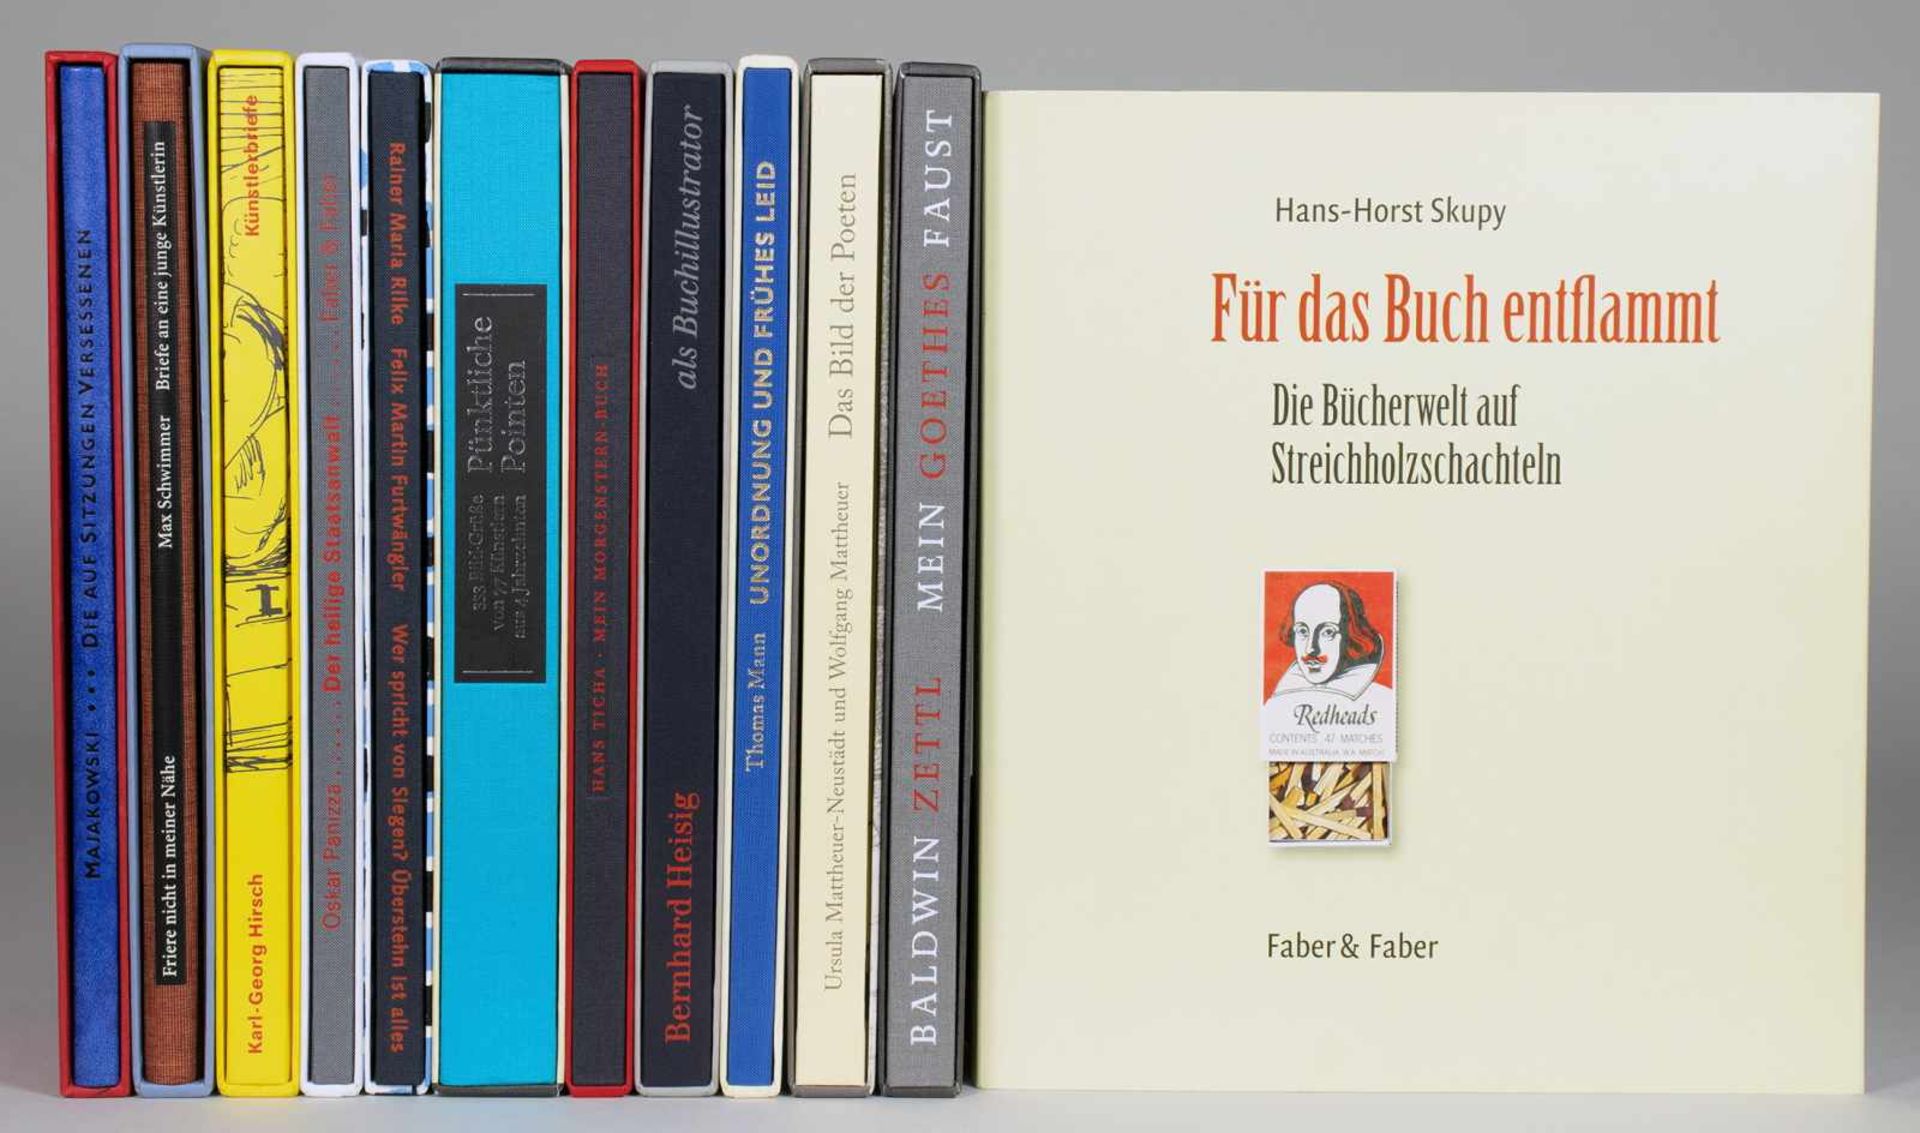 Faber & Faber - Leipziger Liebhaber-Drucke 1-12 [alles Erschienene]. Leipzig 1999-2010. Alle mit